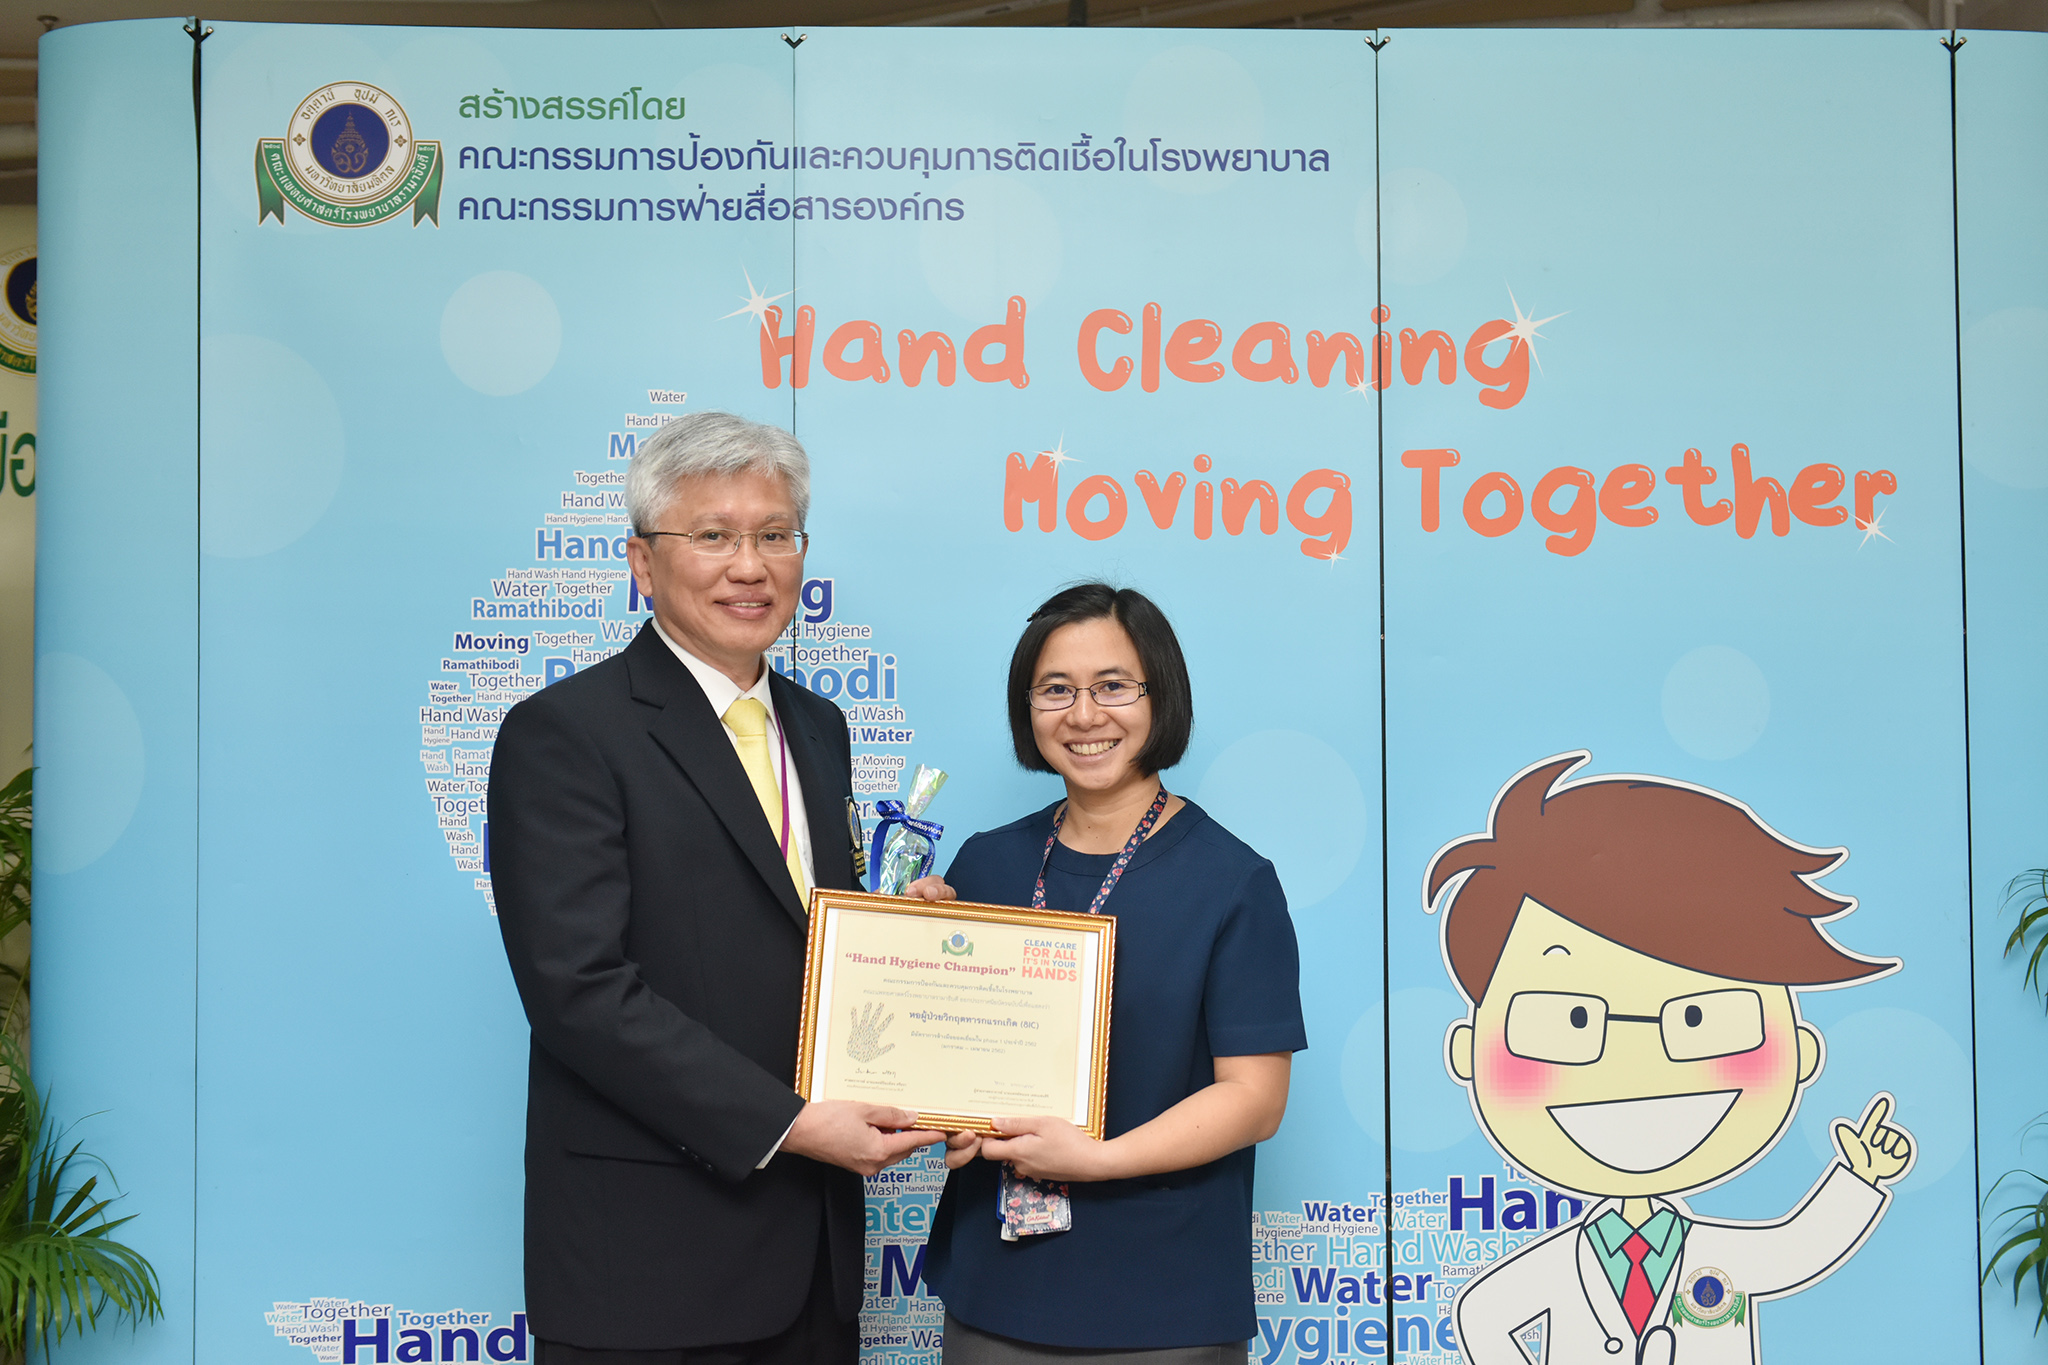 งานป้องกันและควบคุมการติดเชื้อ คณะแพทยศาสตร์โรงพยาบาลรามาธิบดี มหาวิทยาลัยมหิดล ได้จัดโครงการ “Hand Cleaning Moving Together” ประจำปี 2562